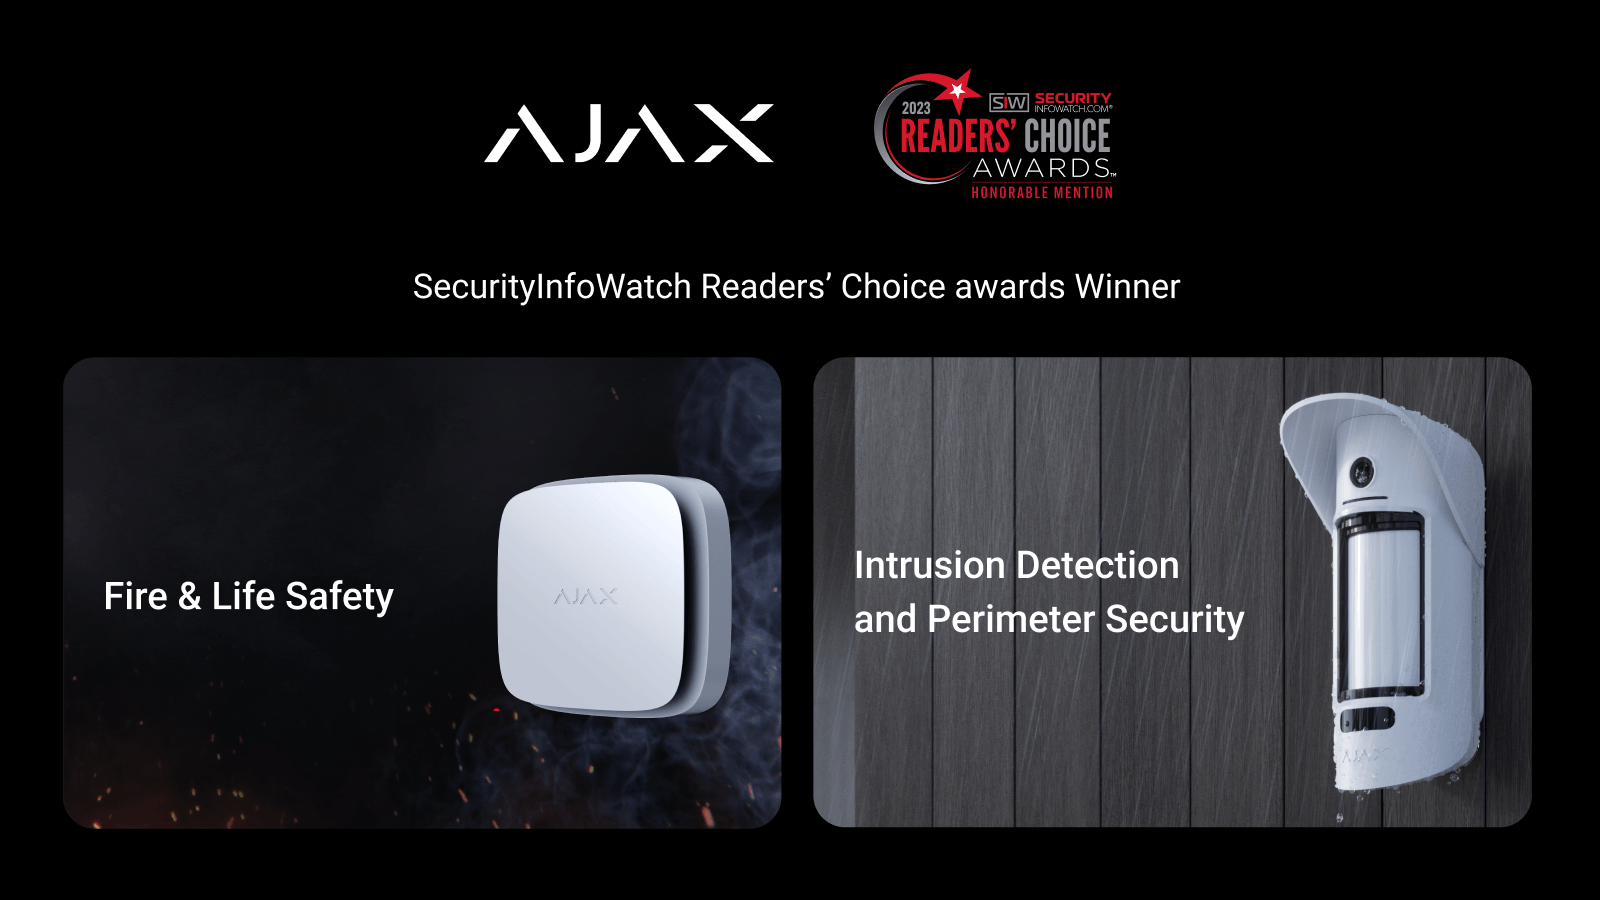 Ajax Systems gana en 2 categorías en los premios SecurityInfoWatch.com Readers’ Choice Awards en Estados Unidos